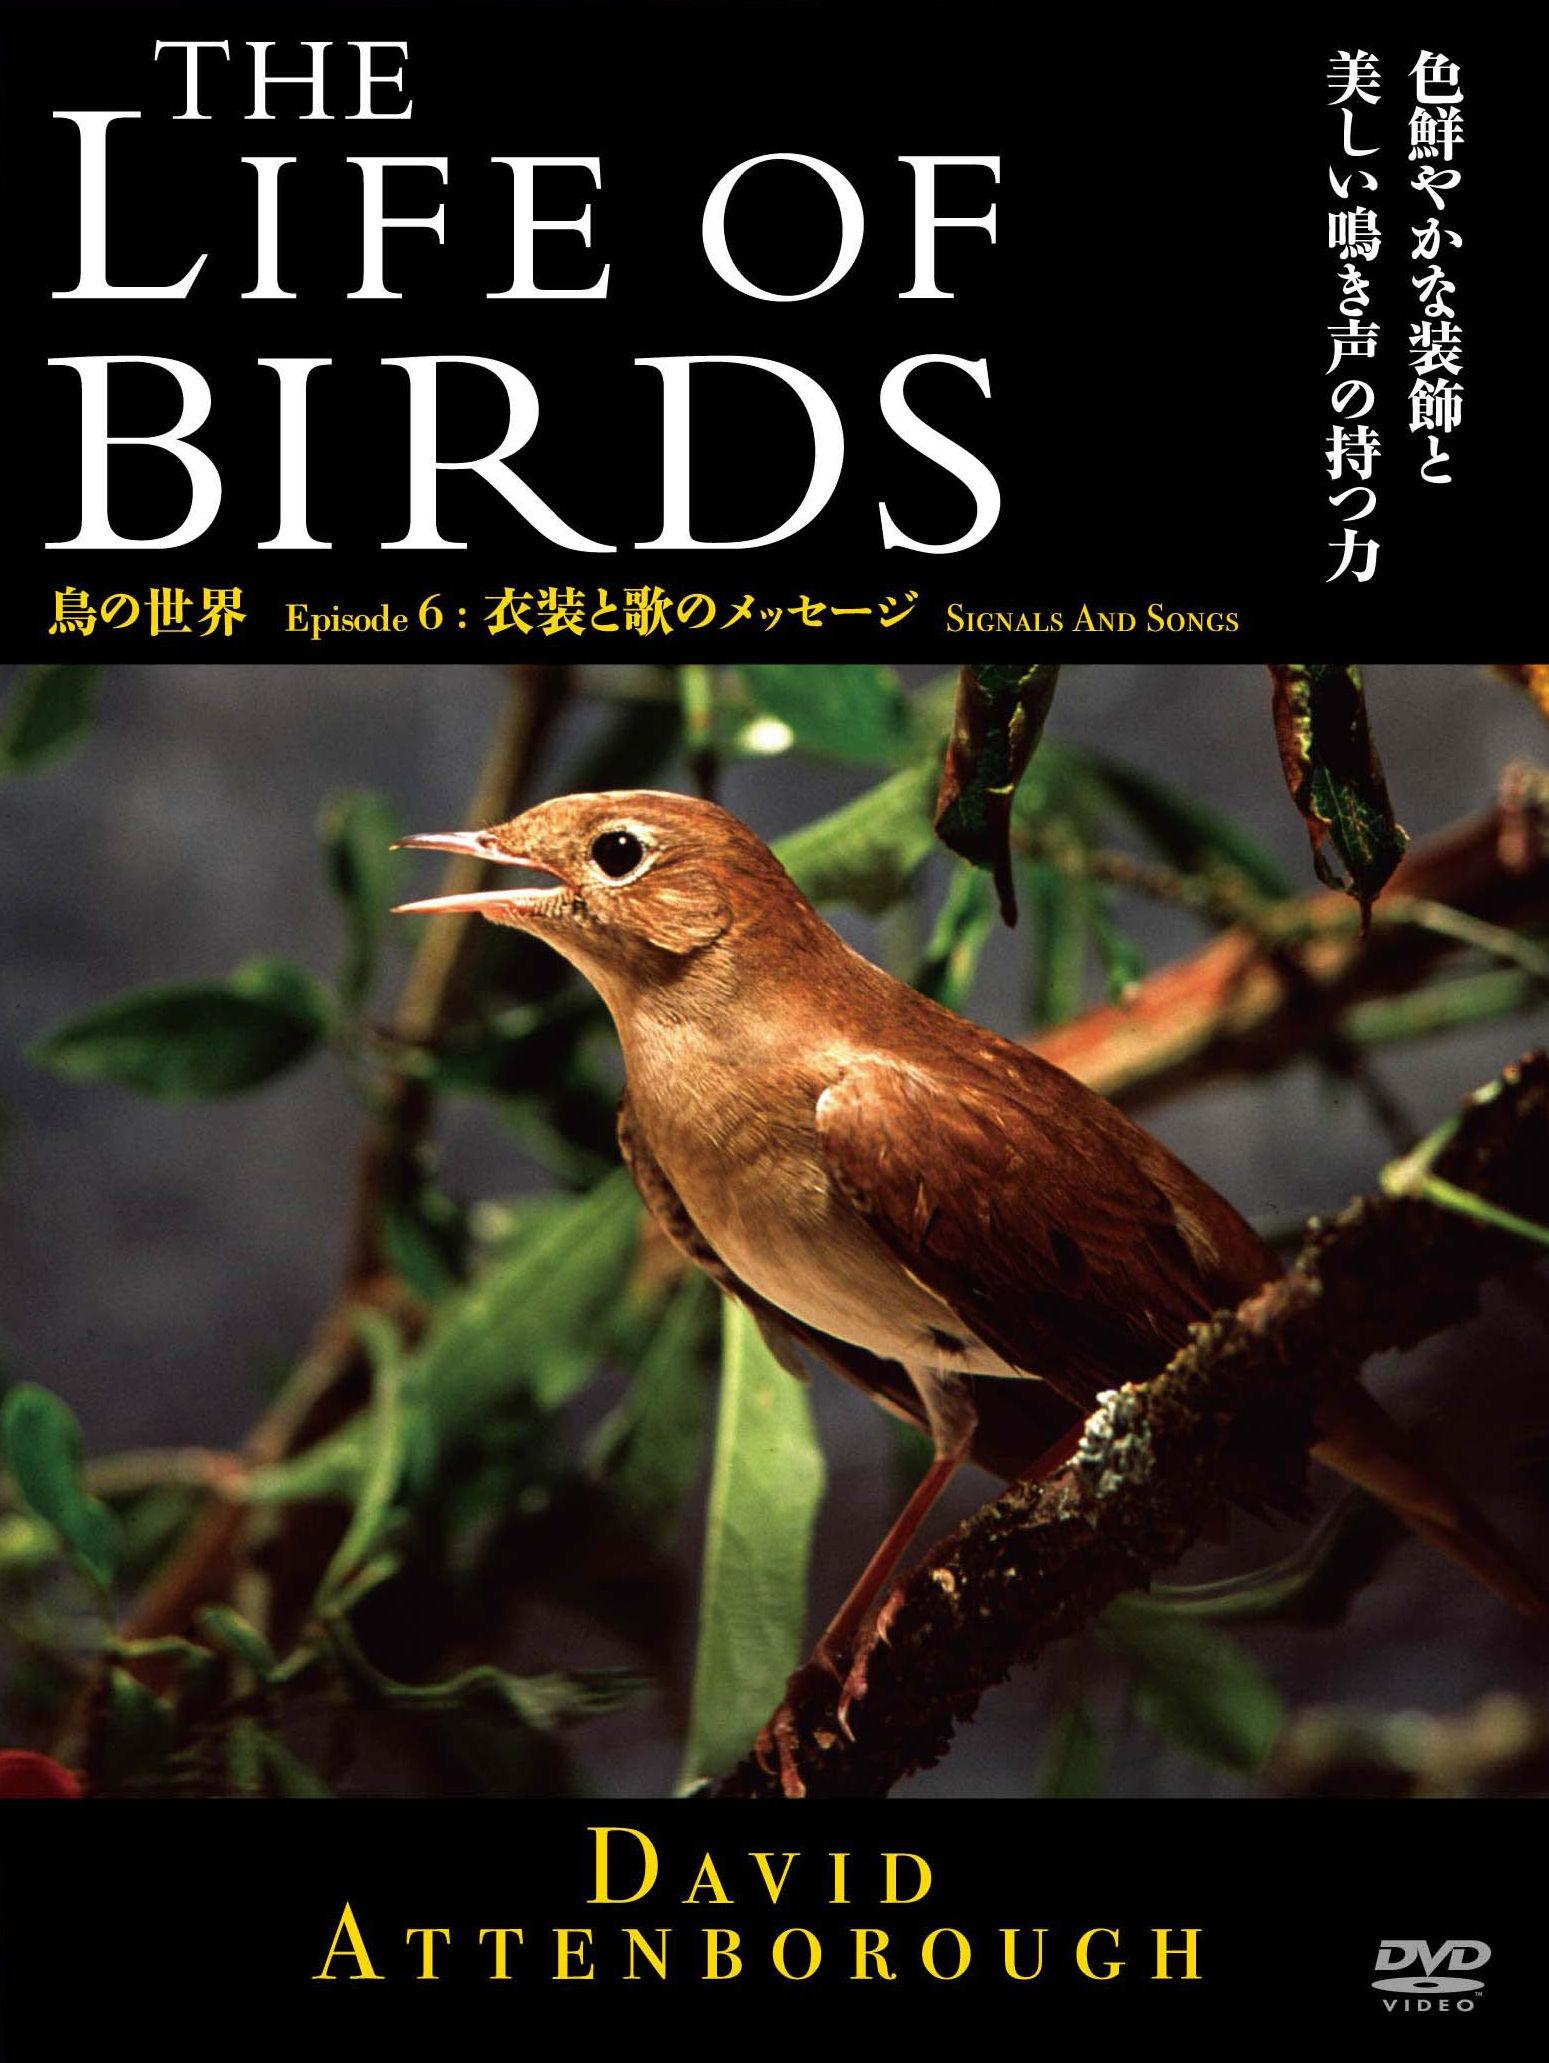 THE LIFE OF BIRDS 鳥の世界 衣装と歌のメッセージ のサムネイル画像